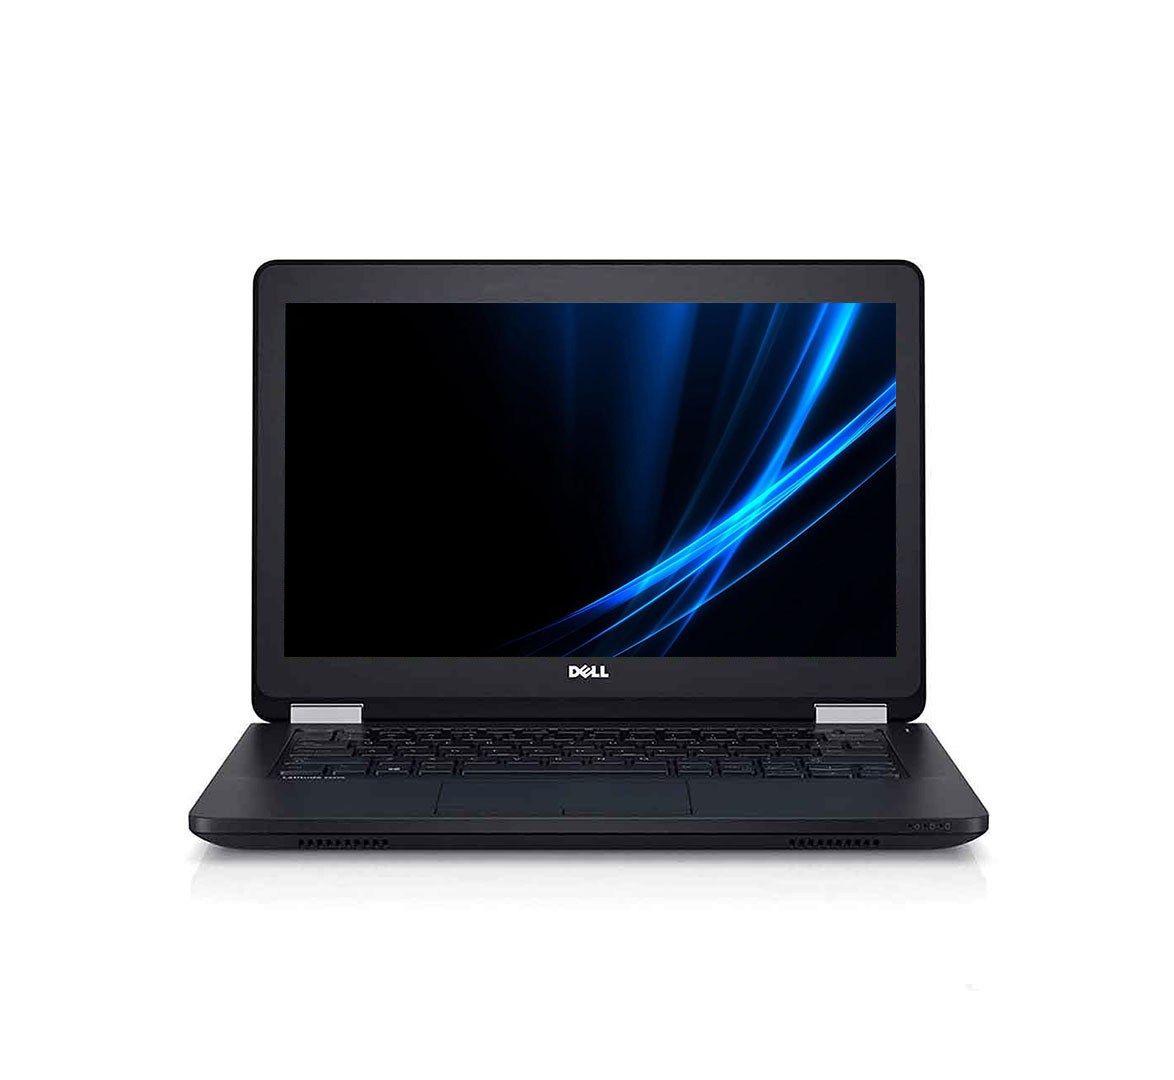 Dell Latitude E5270 Business Laptop, Intel Core i5-6th Gen. CPU 